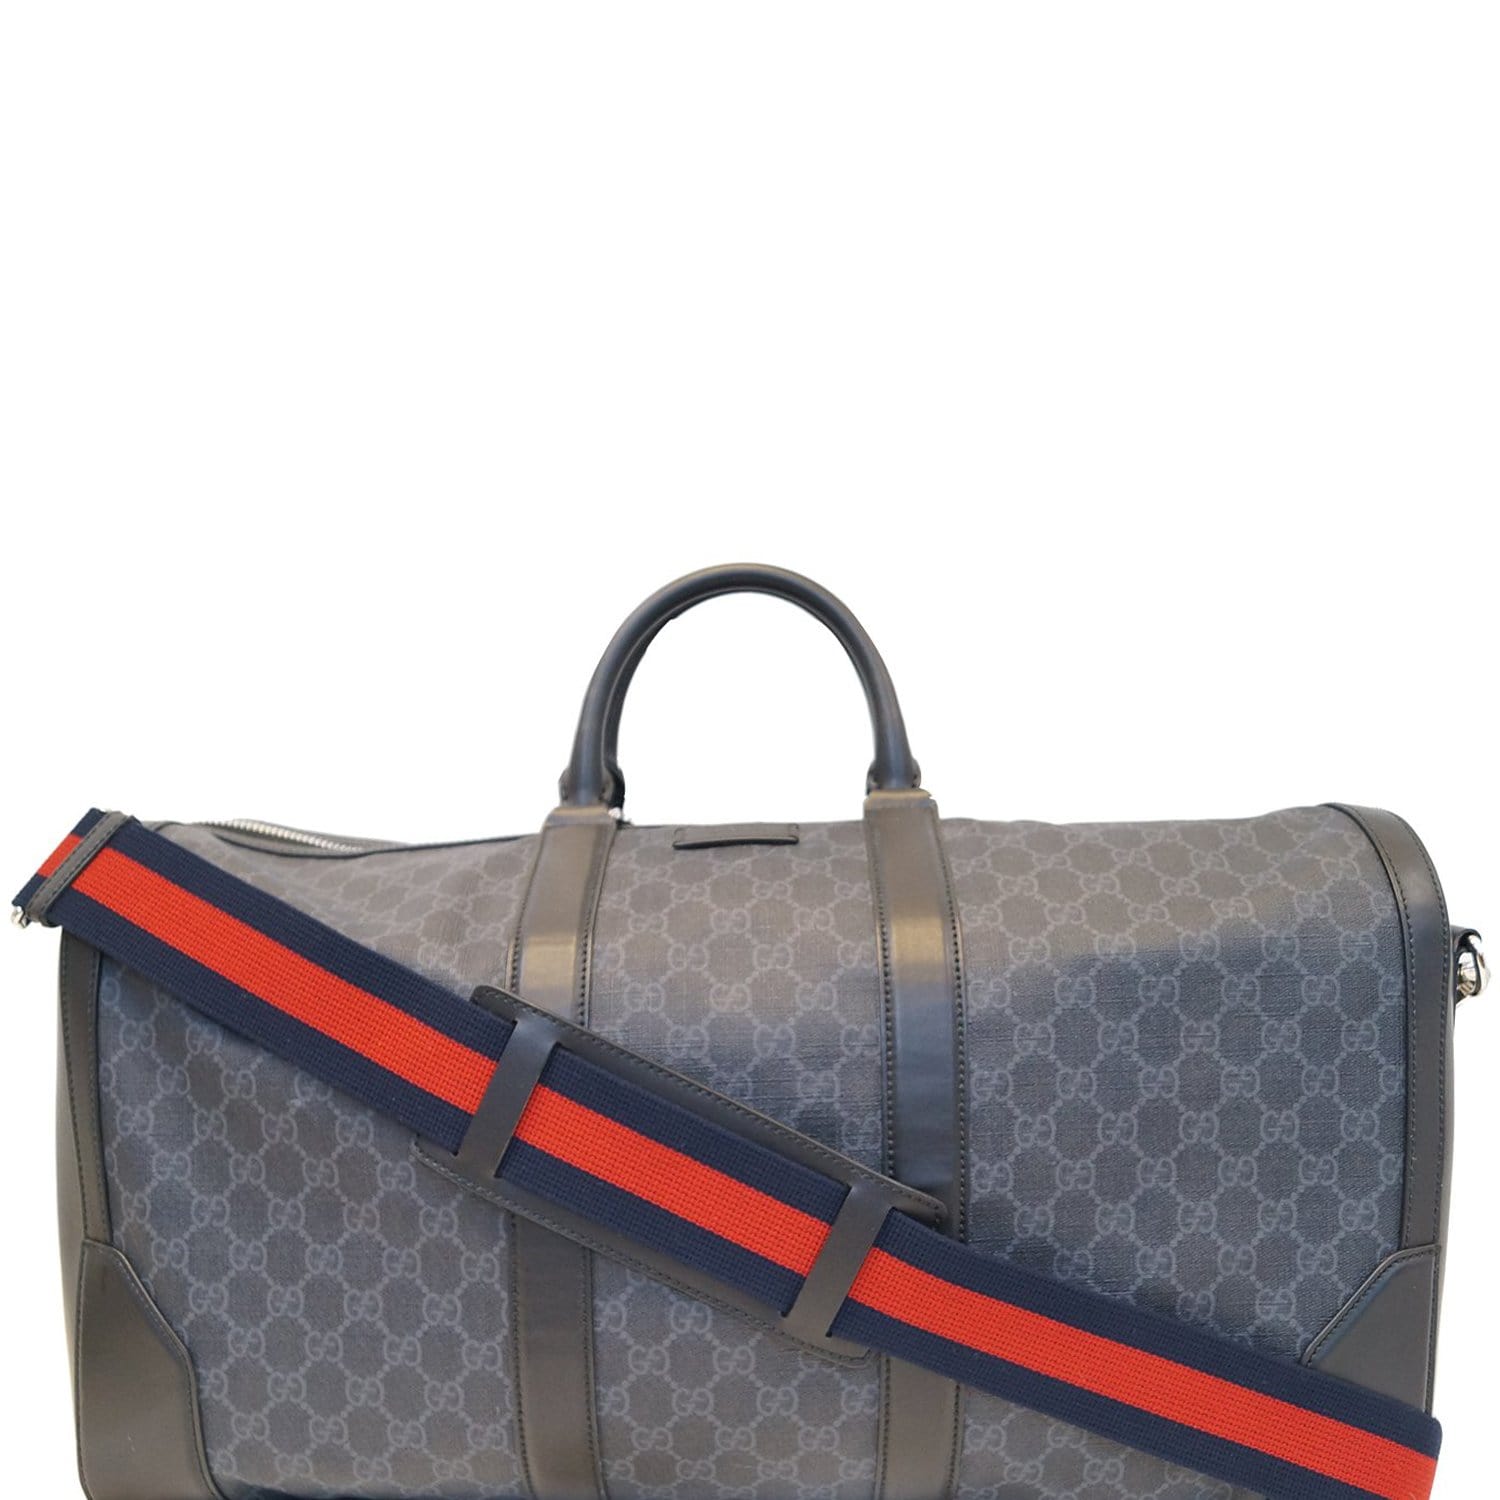 supreme luggage bag